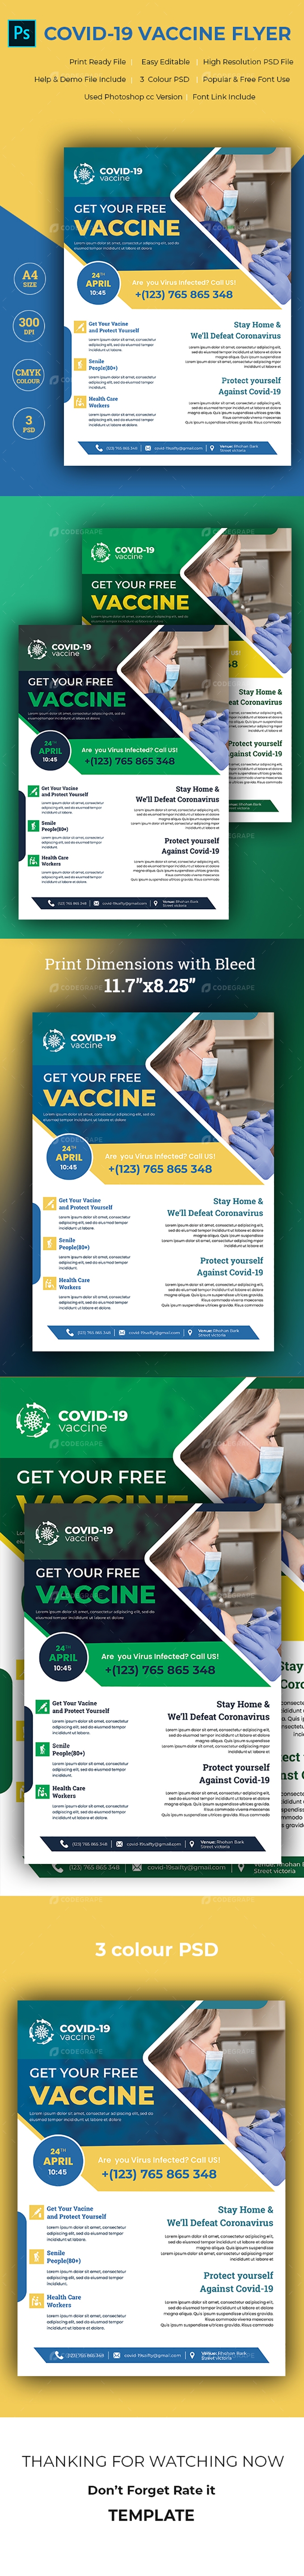 Covid-19 Vaccine Flyer